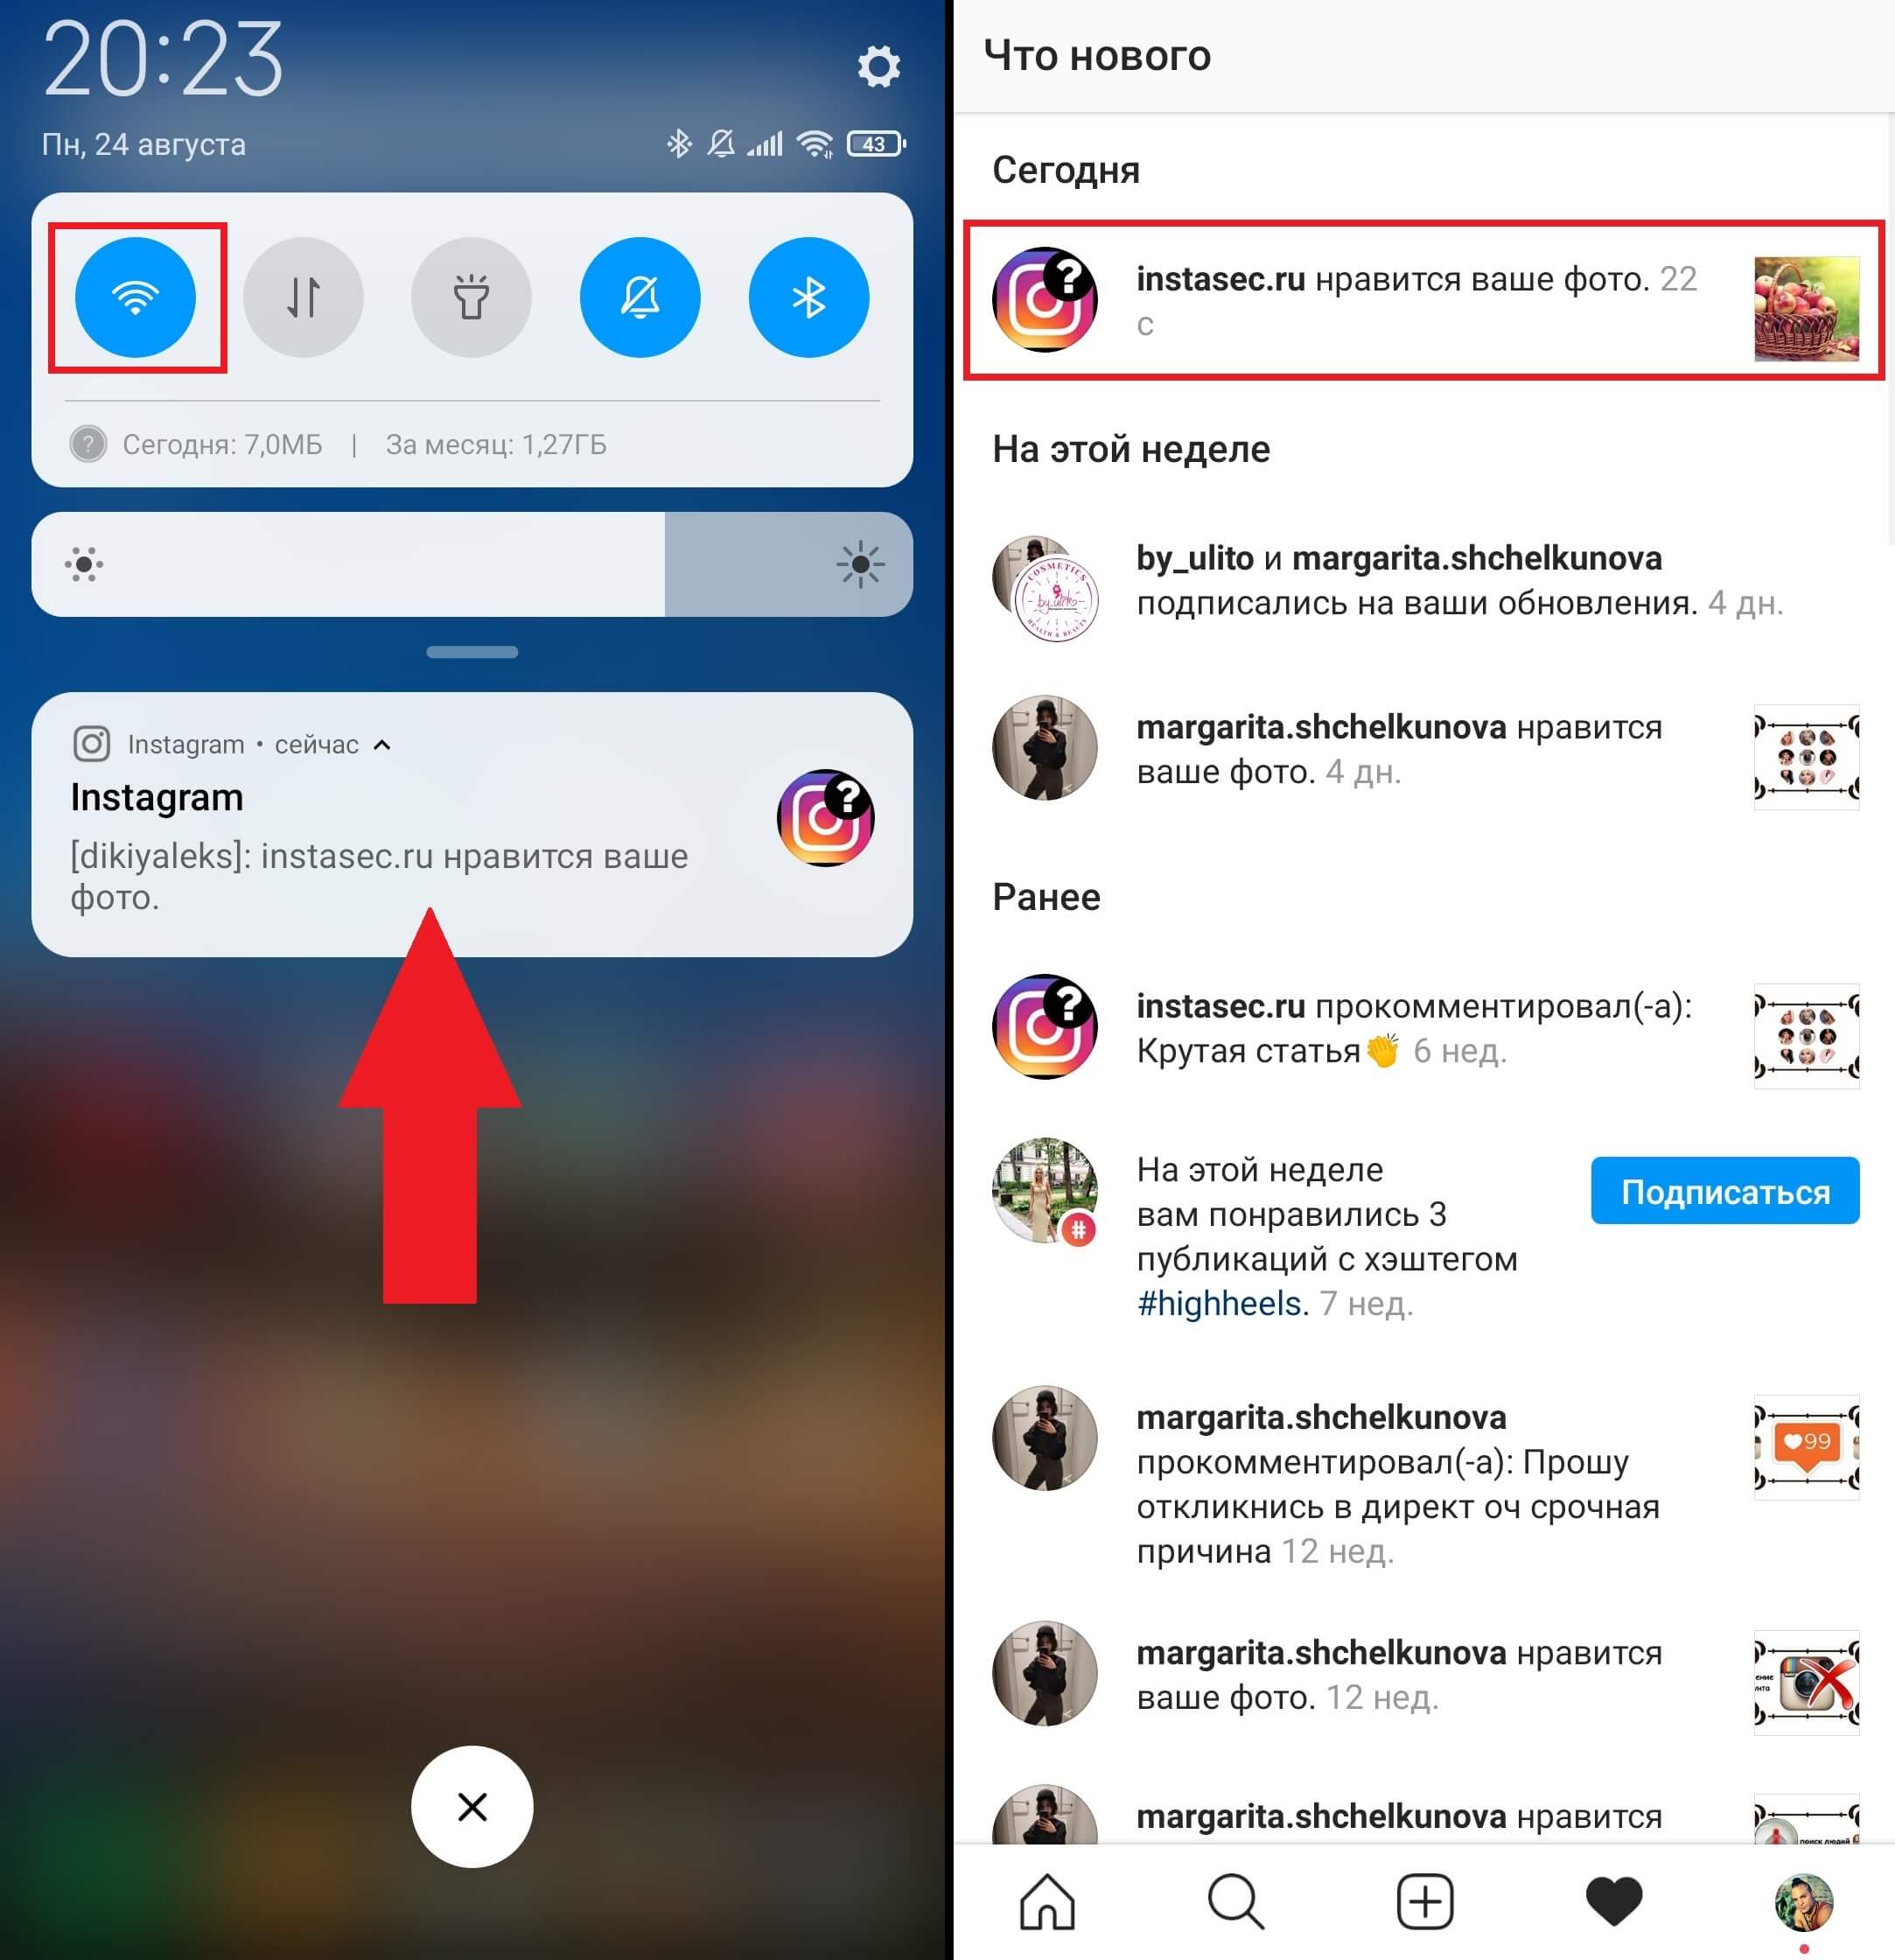 Как создать второй аккаунт instagram на одном телефоне или компьютере